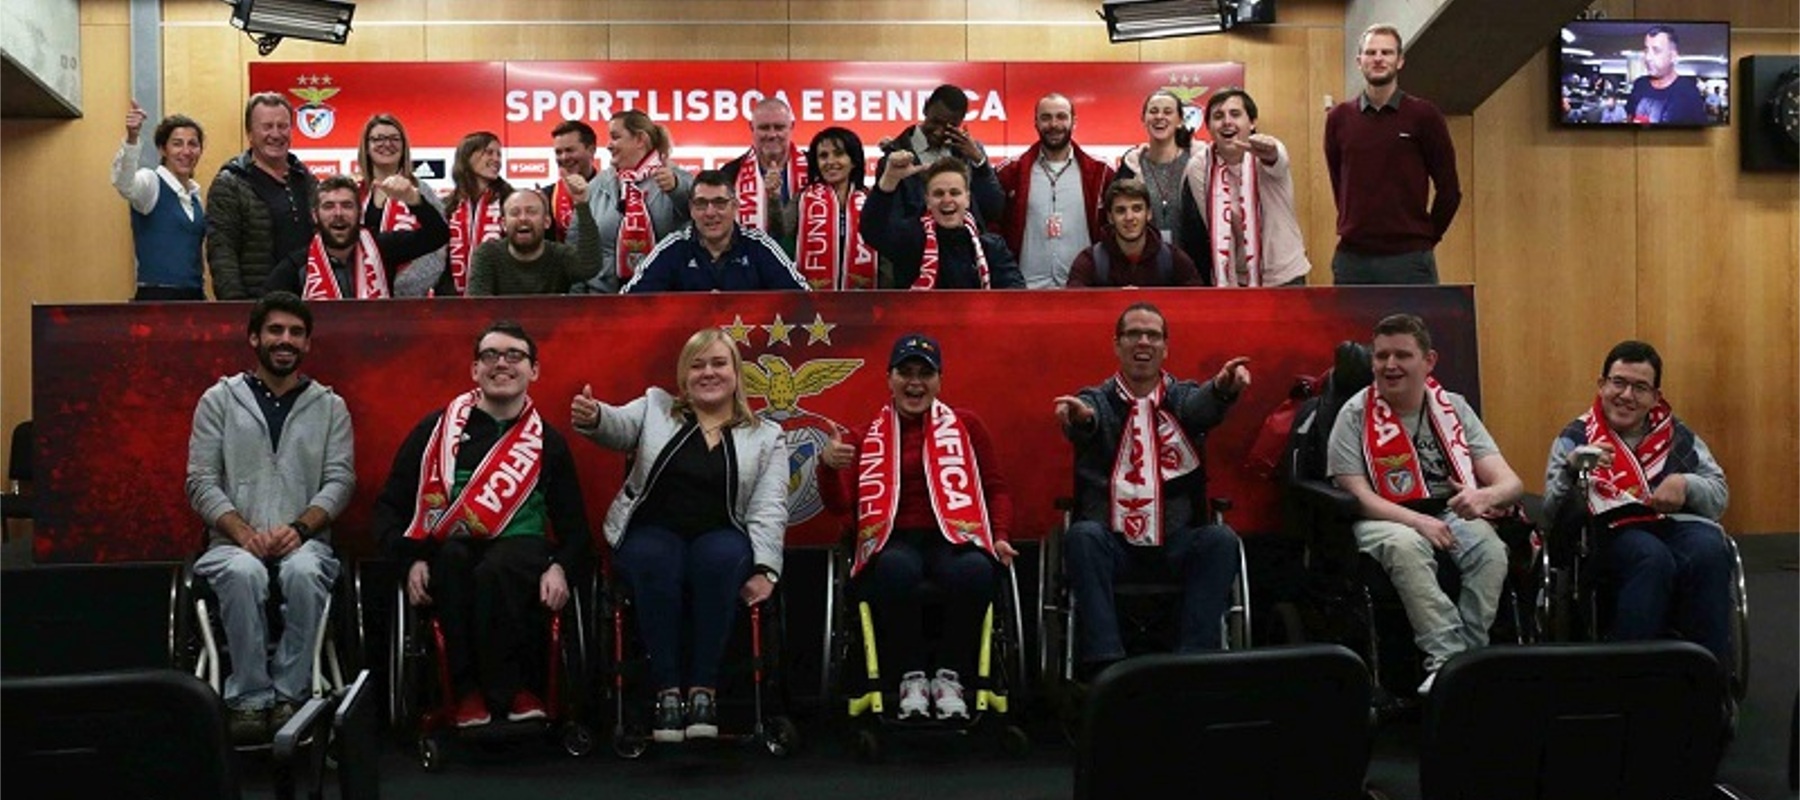 Football For all Teilnehmer*innen, teilweise im Rollstuhl, lachen freudig in die Kamera. Manche haben einen Fanschal von Lissabon um.